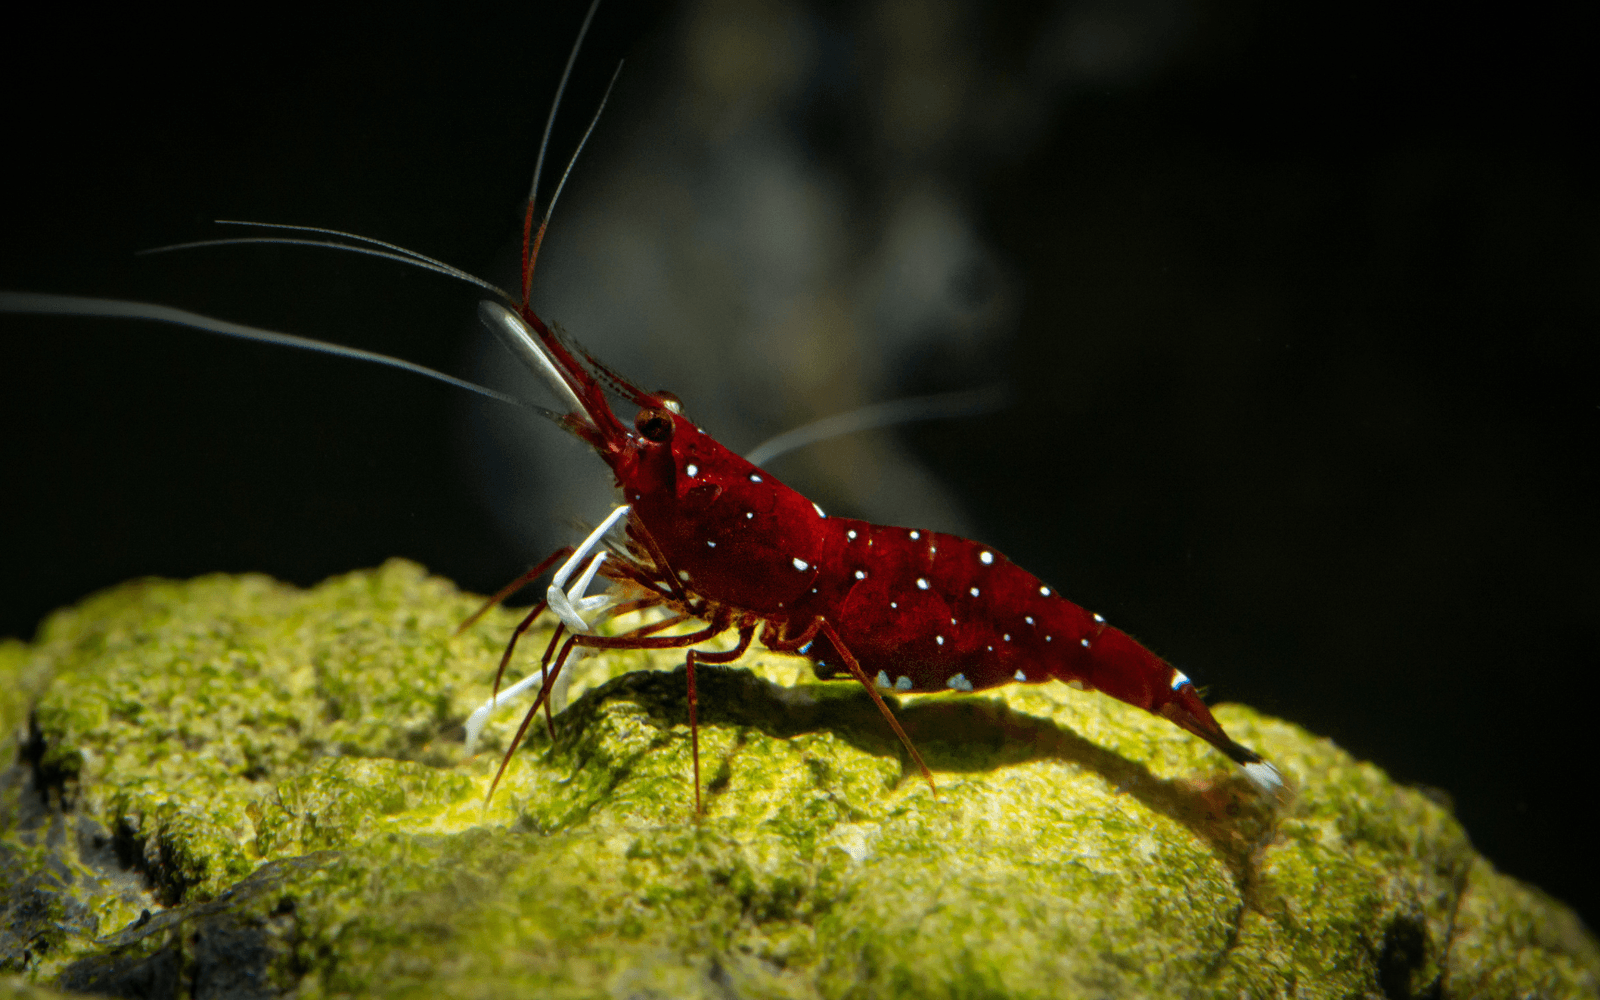 Red sulawesi shrimp